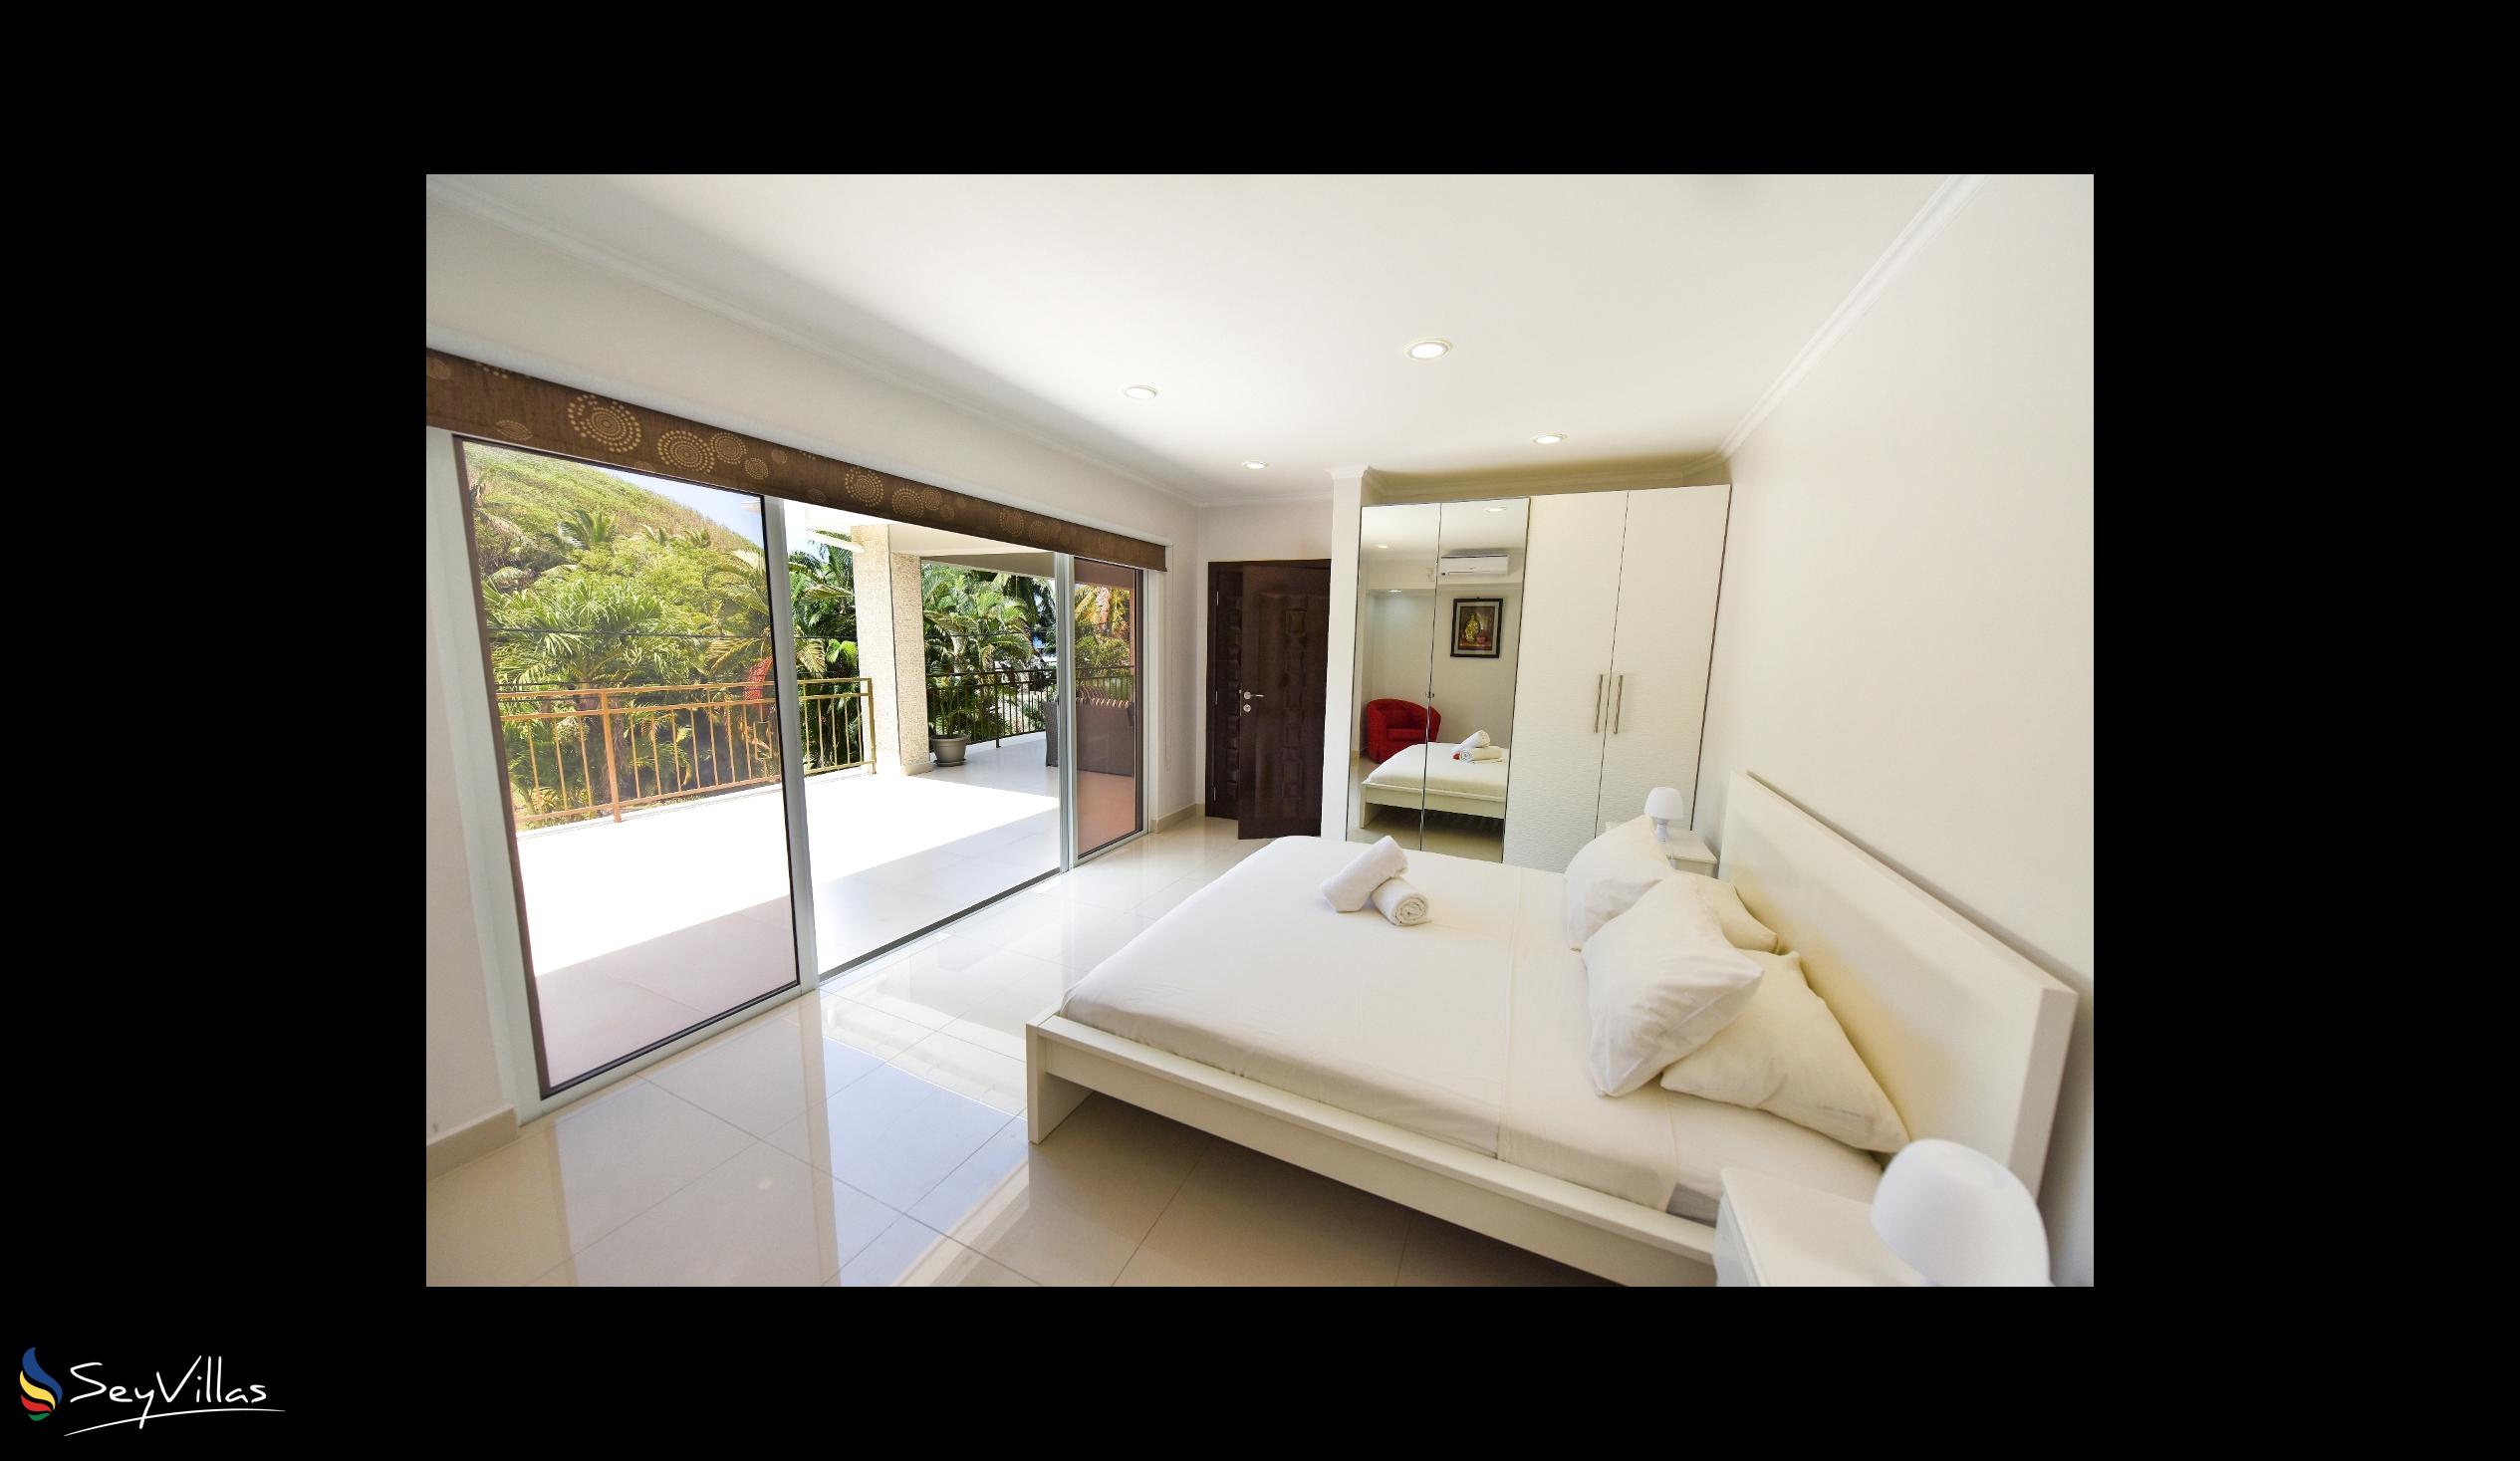 Foto 24: Moulin Kann Villas - Appartement 2 chambres - Mahé (Seychelles)